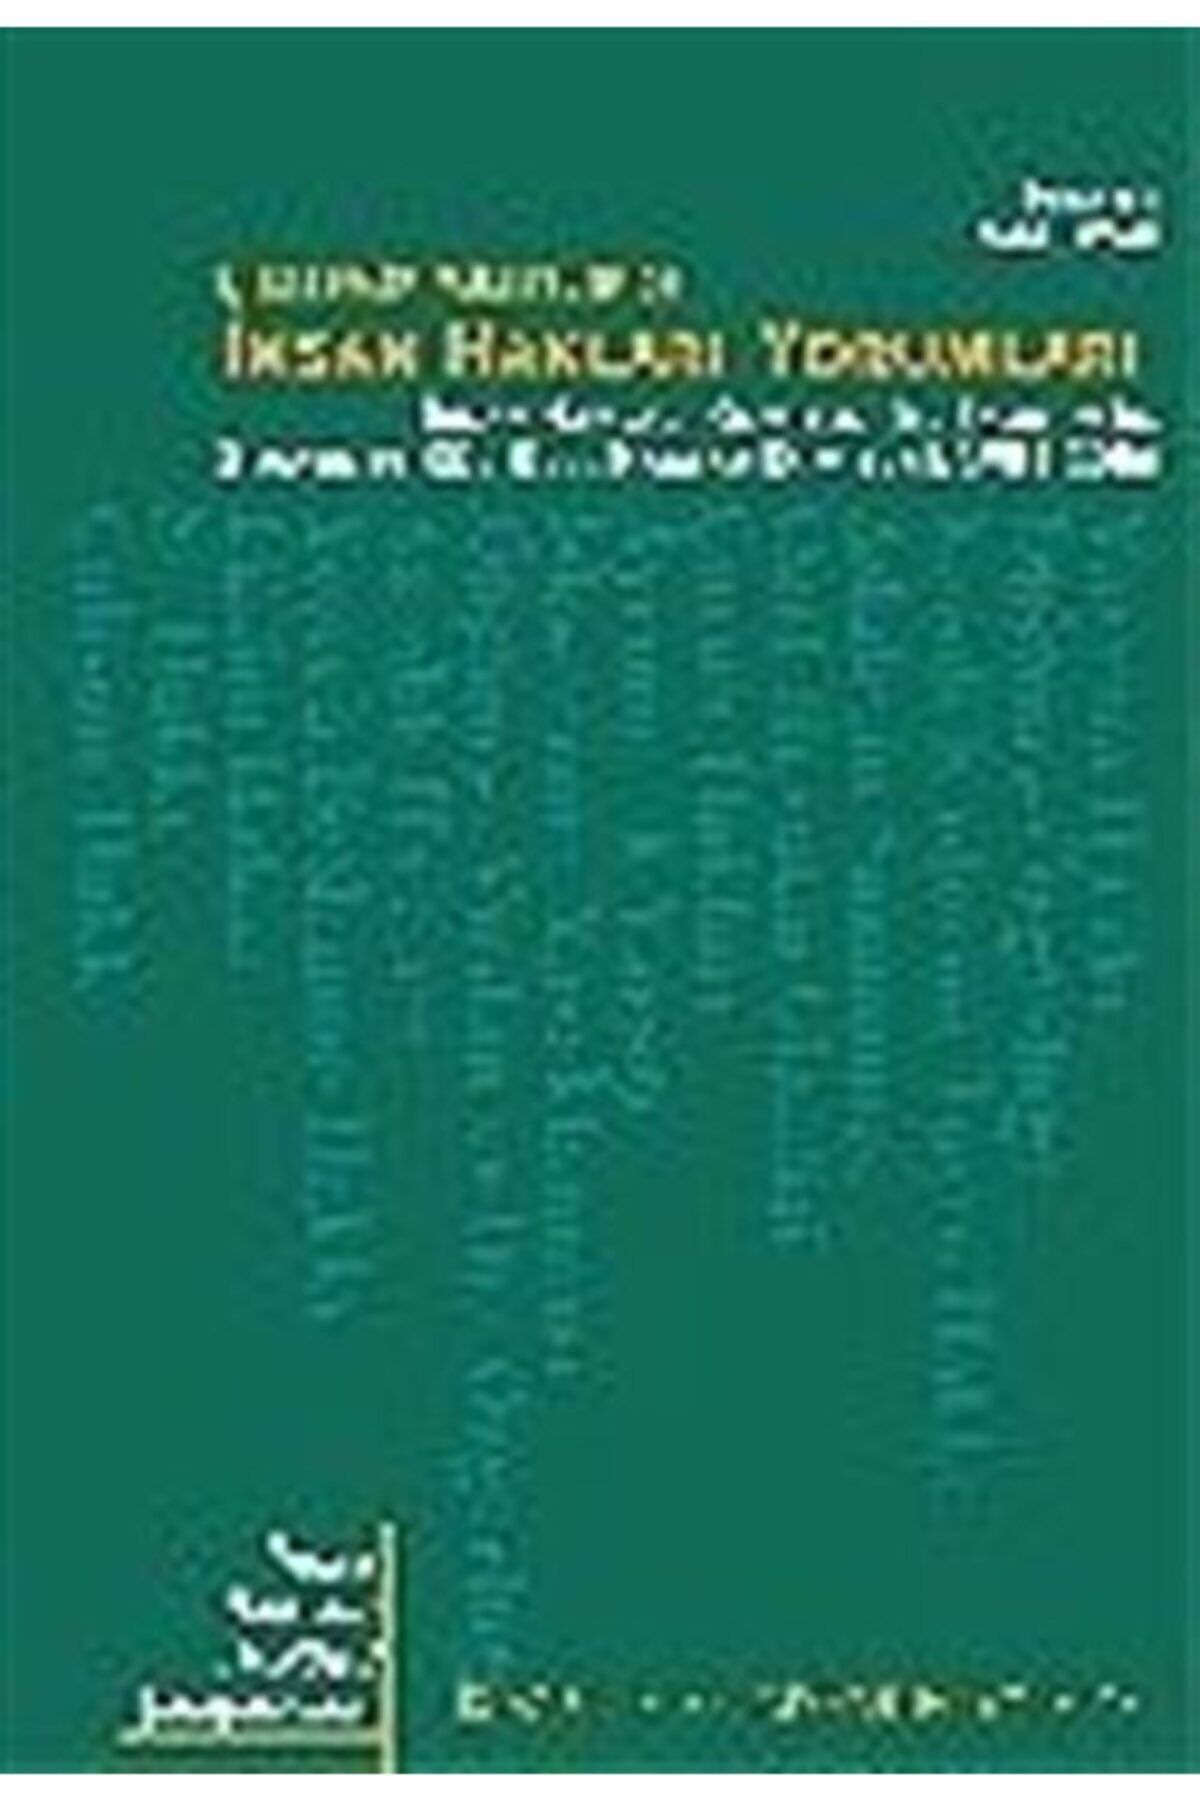 İstanbul Bilgi Üniversitesi Yayınları Birleşmiş Milletler'de Insan Hakları Yorumları